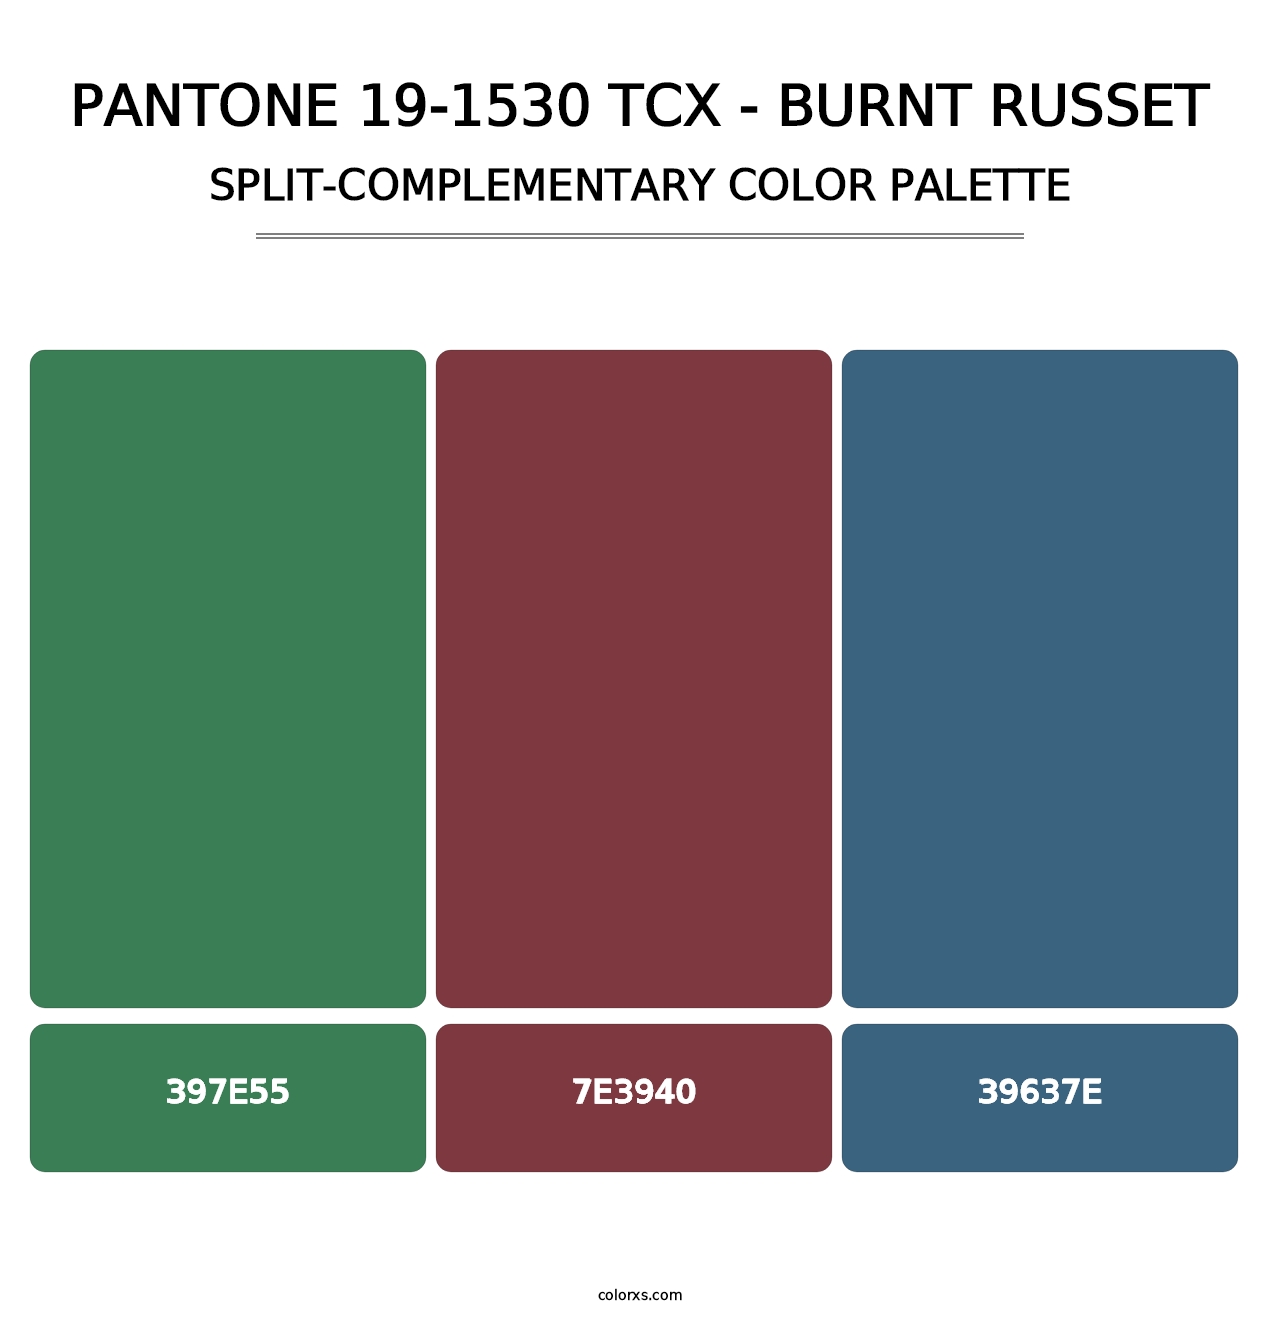 PANTONE 19-1530 TCX - Burnt Russet - Split-Complementary Color Palette